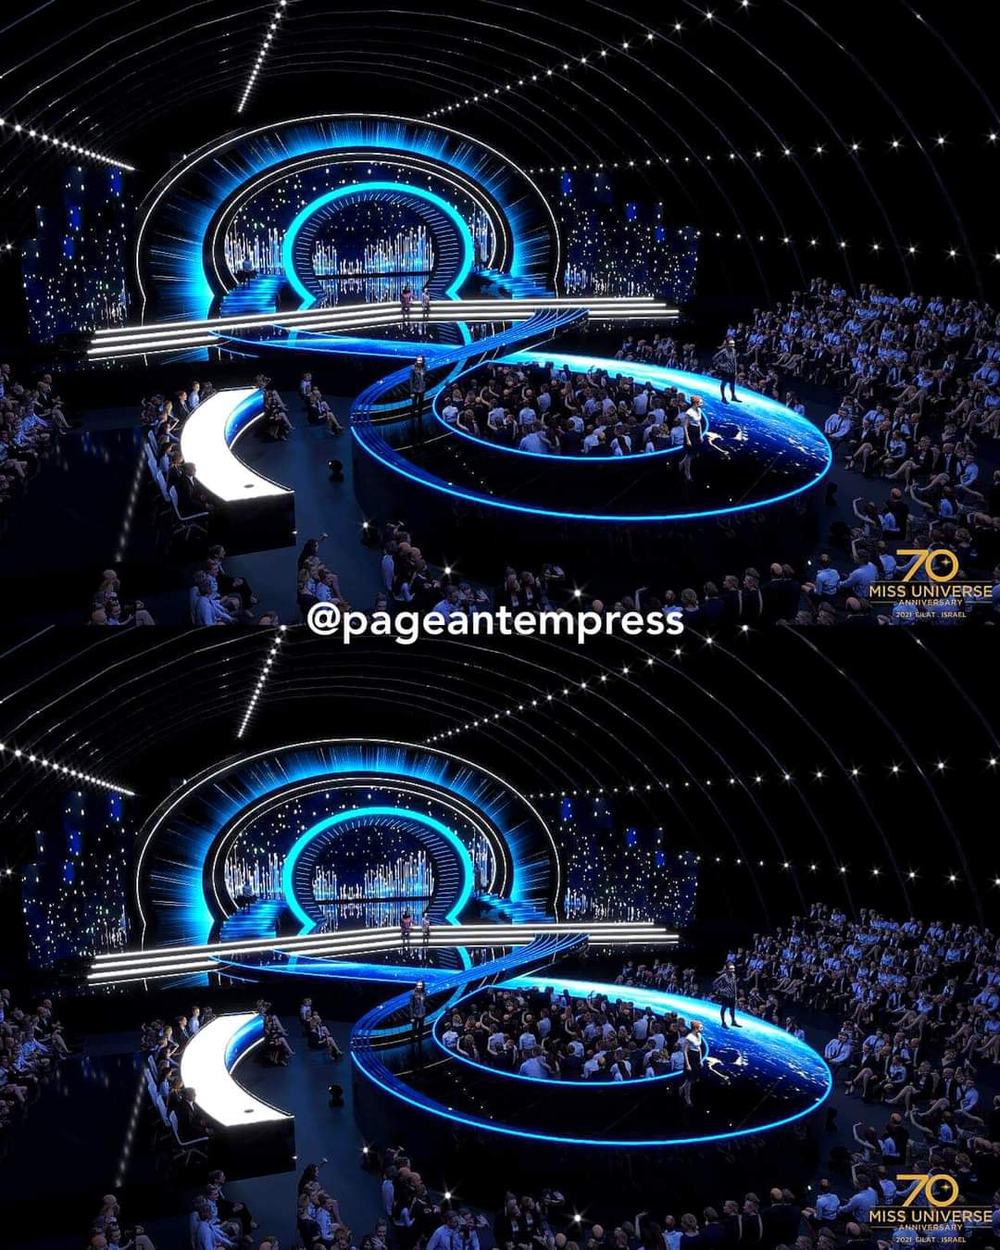  
Toàn cảnh sân khấu của Miss Universe 2021. (Ảnh: Facebook Pageantempress)